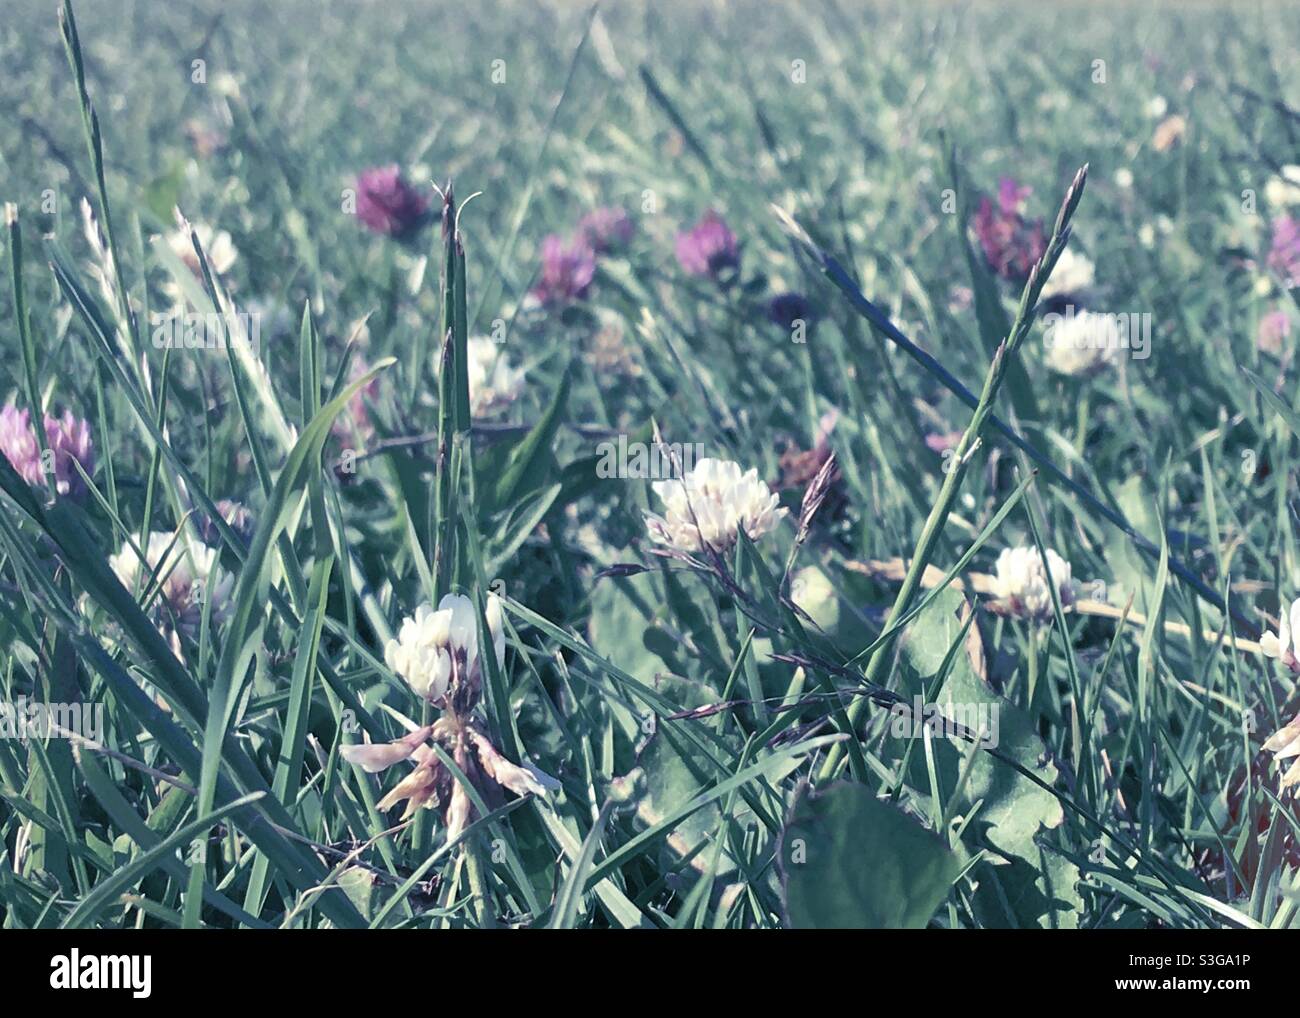 Fiori di trifoglio rosa e bianco in erba Foto Stock